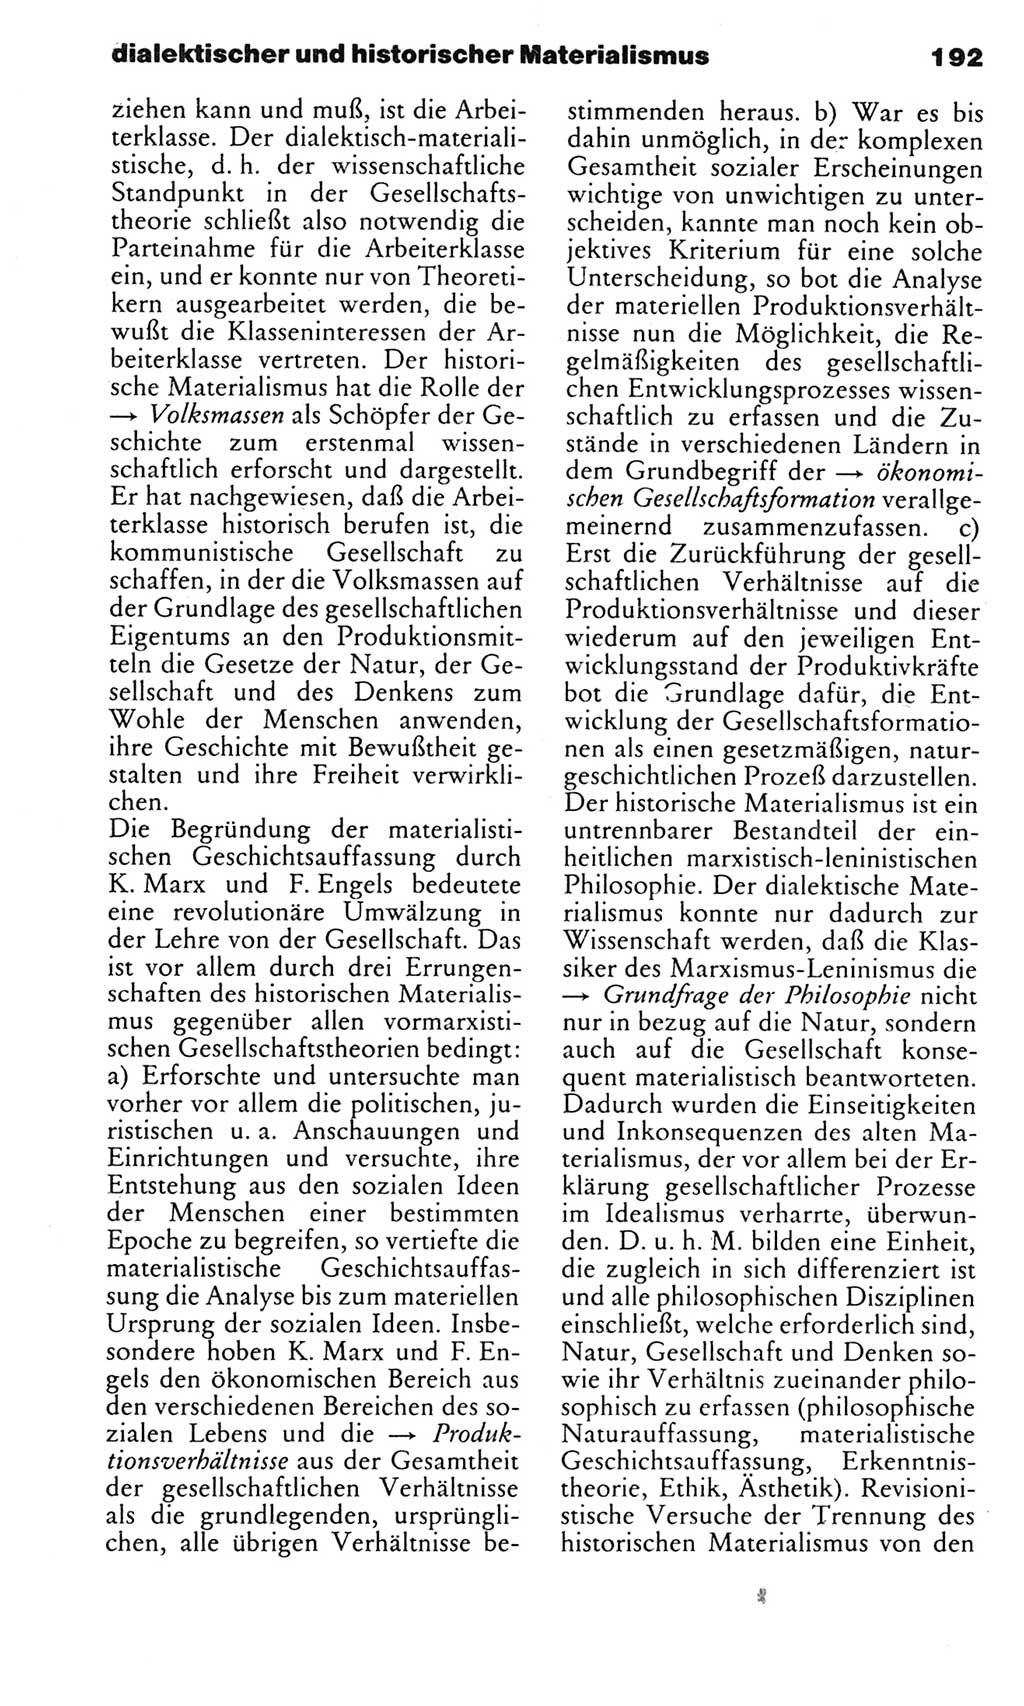 Kleines politisches Wörterbuch [Deutsche Demokratische Republik (DDR)] 1983, Seite 192 (Kl. pol. Wb. DDR 1983, S. 192)